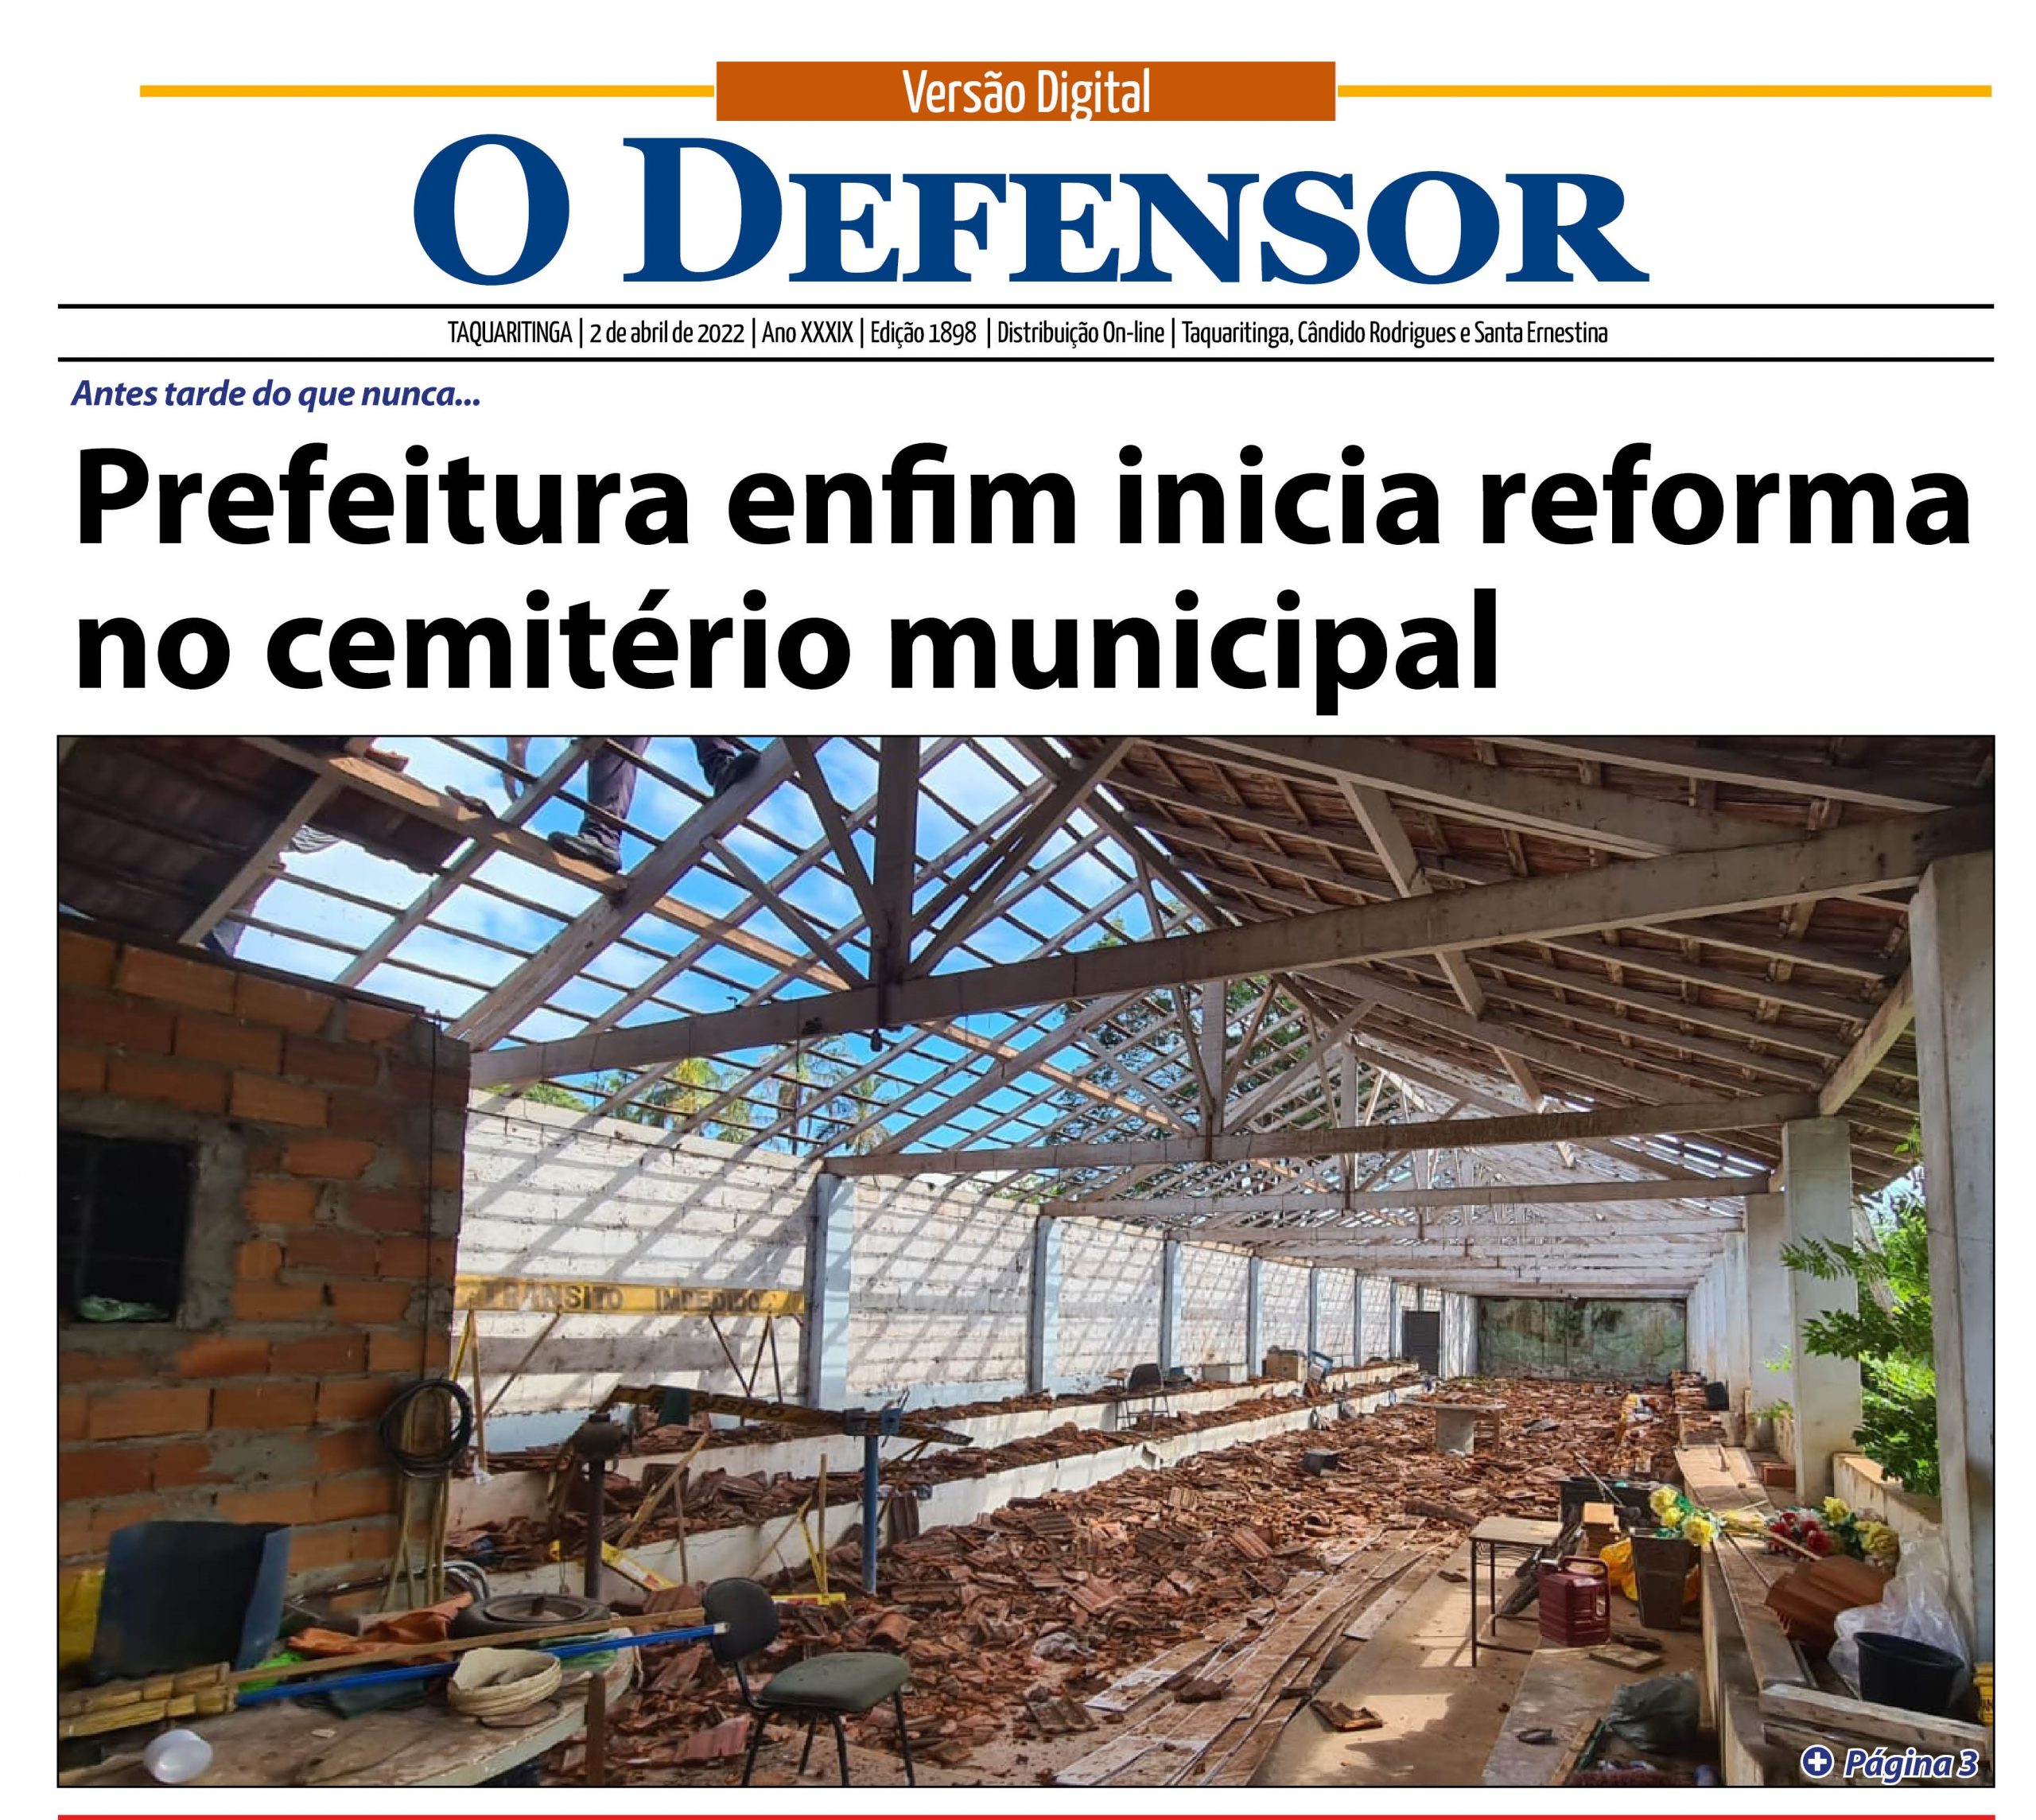 Jornal O Defensor - 2-04-2022 - Sábado - Capa